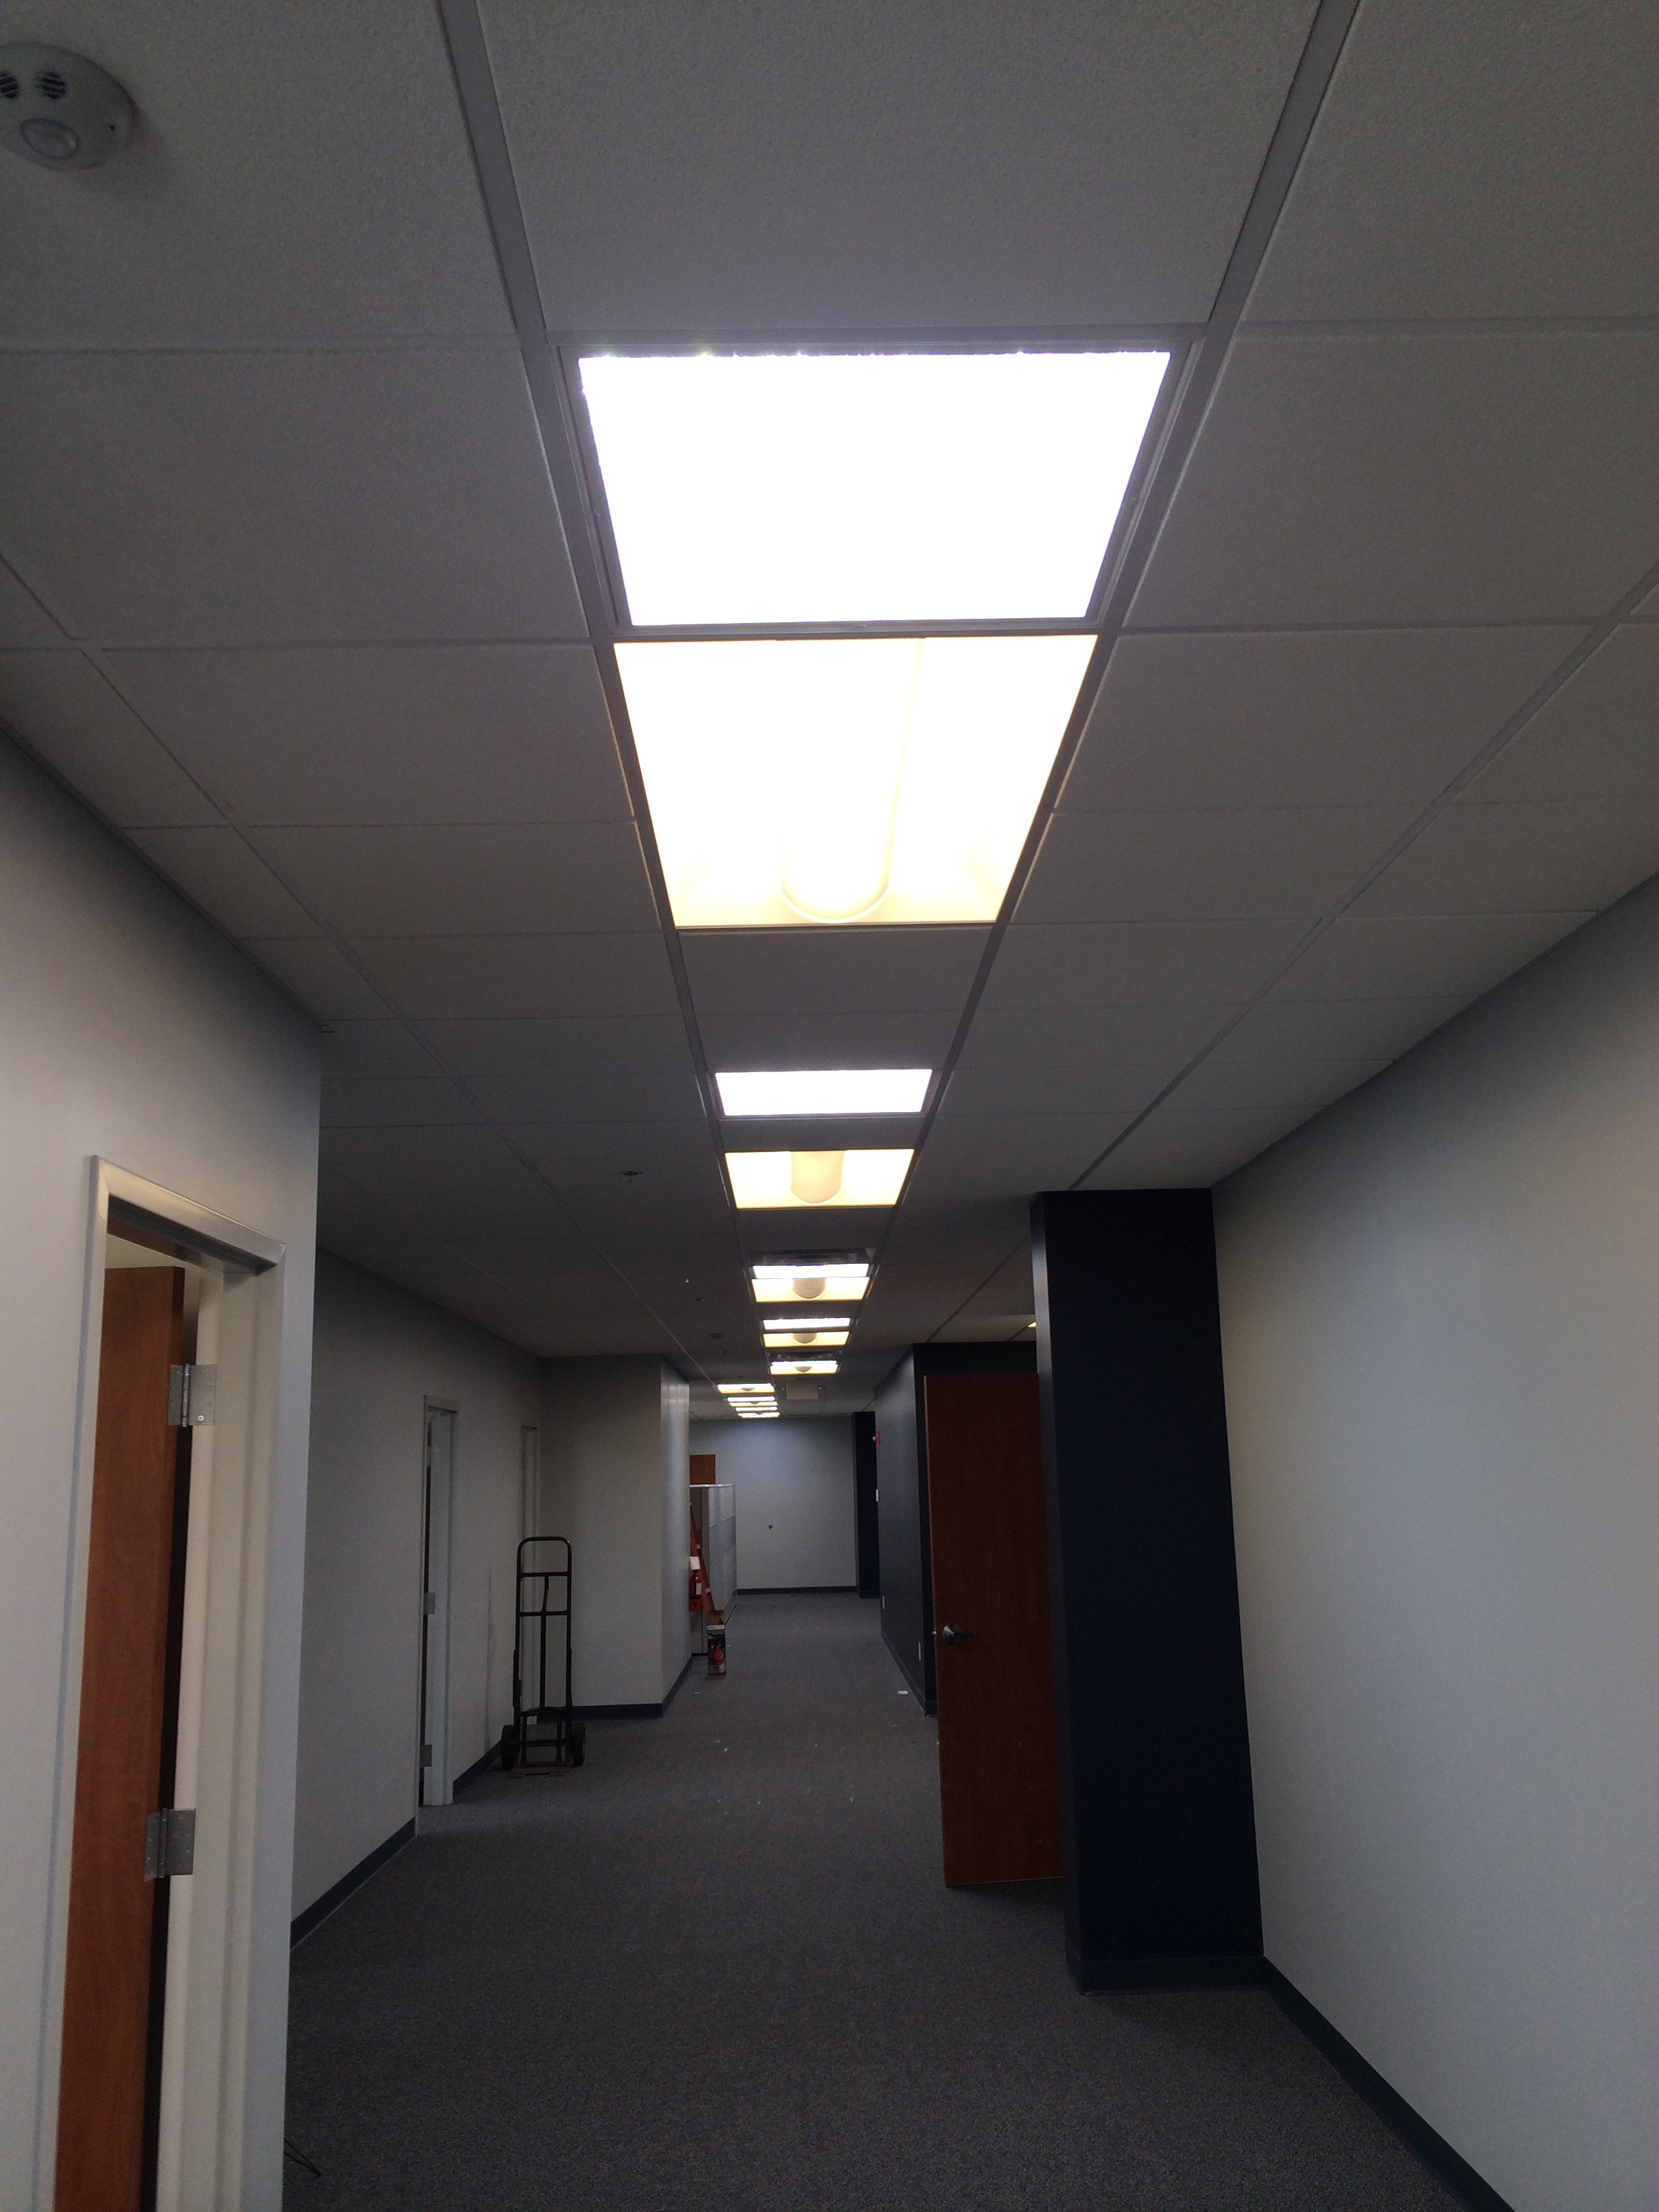 Office hallway, the first light is skylight, then a flourescent light fixture